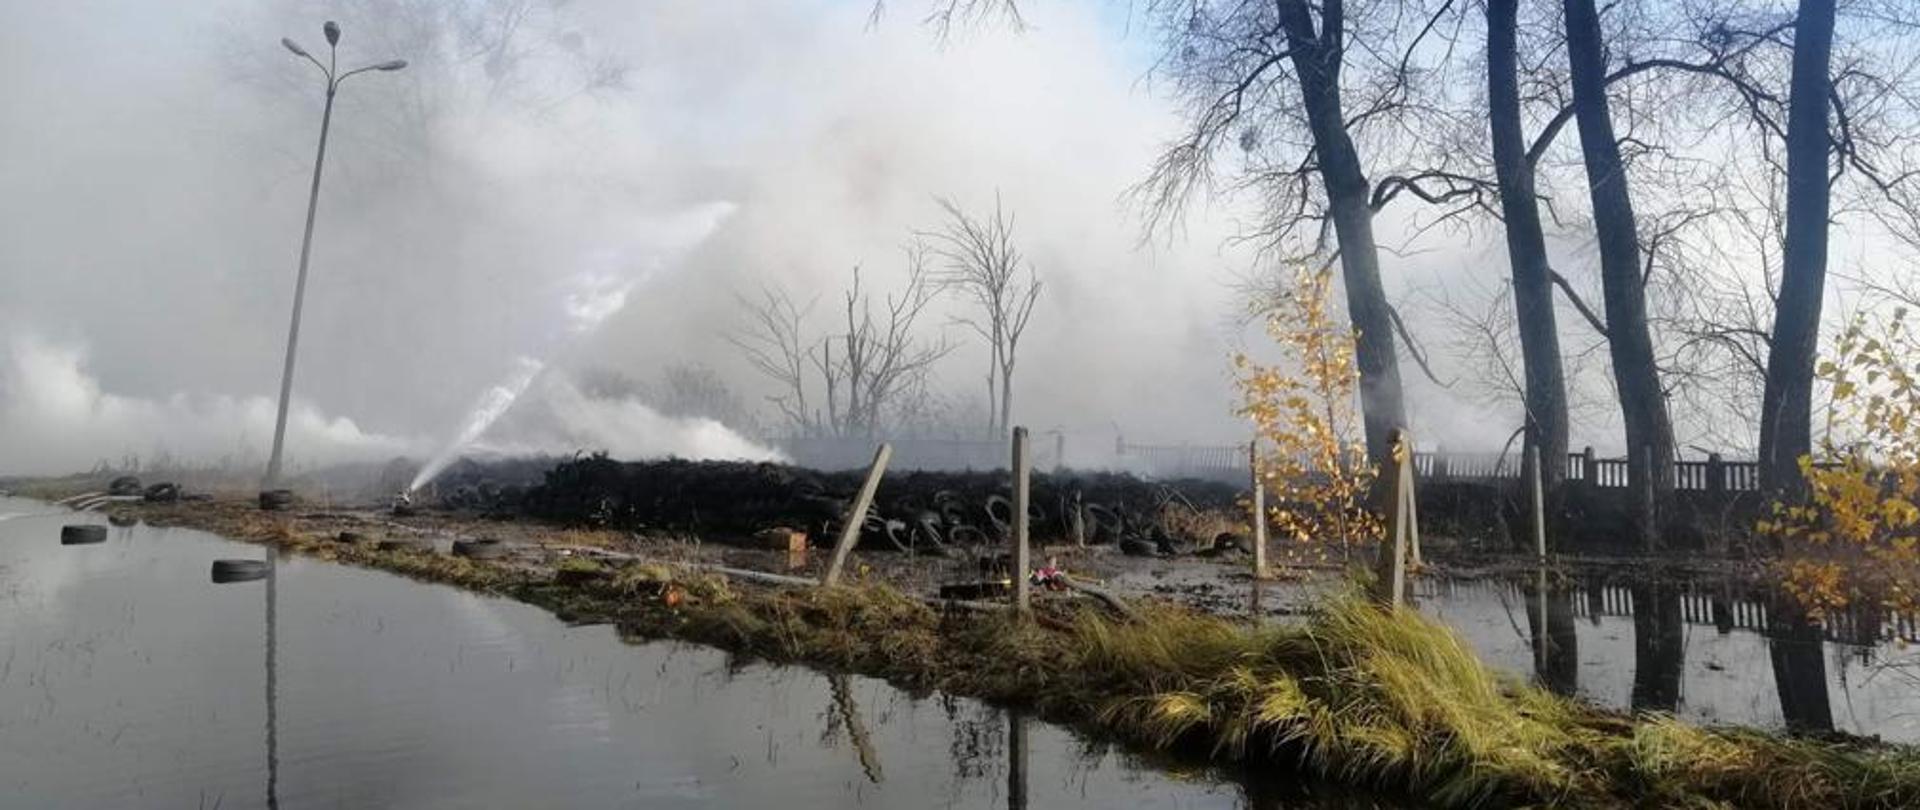 Zdjęcie częściowo ugaszonego pożaru składowiska opon w Raciniewie, widoczne linie gaśnicze oraz podawane prądy wody, w tle unoszący się biały i szary dym.